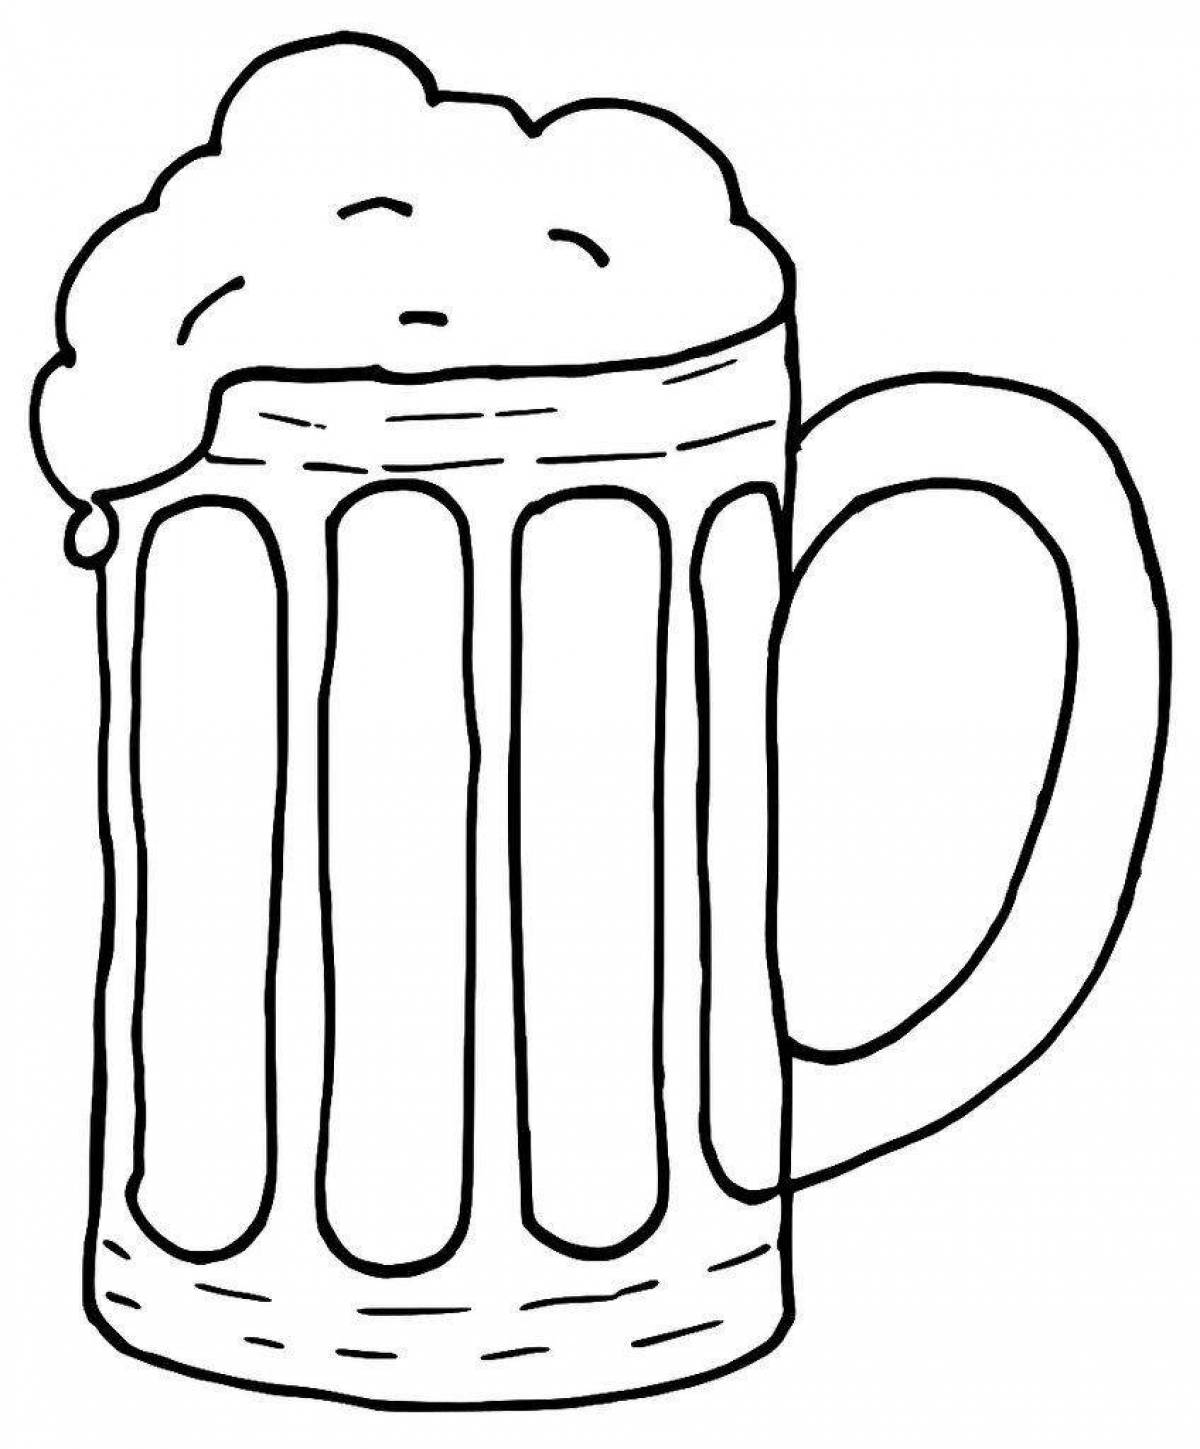 Old beer mug coloring page